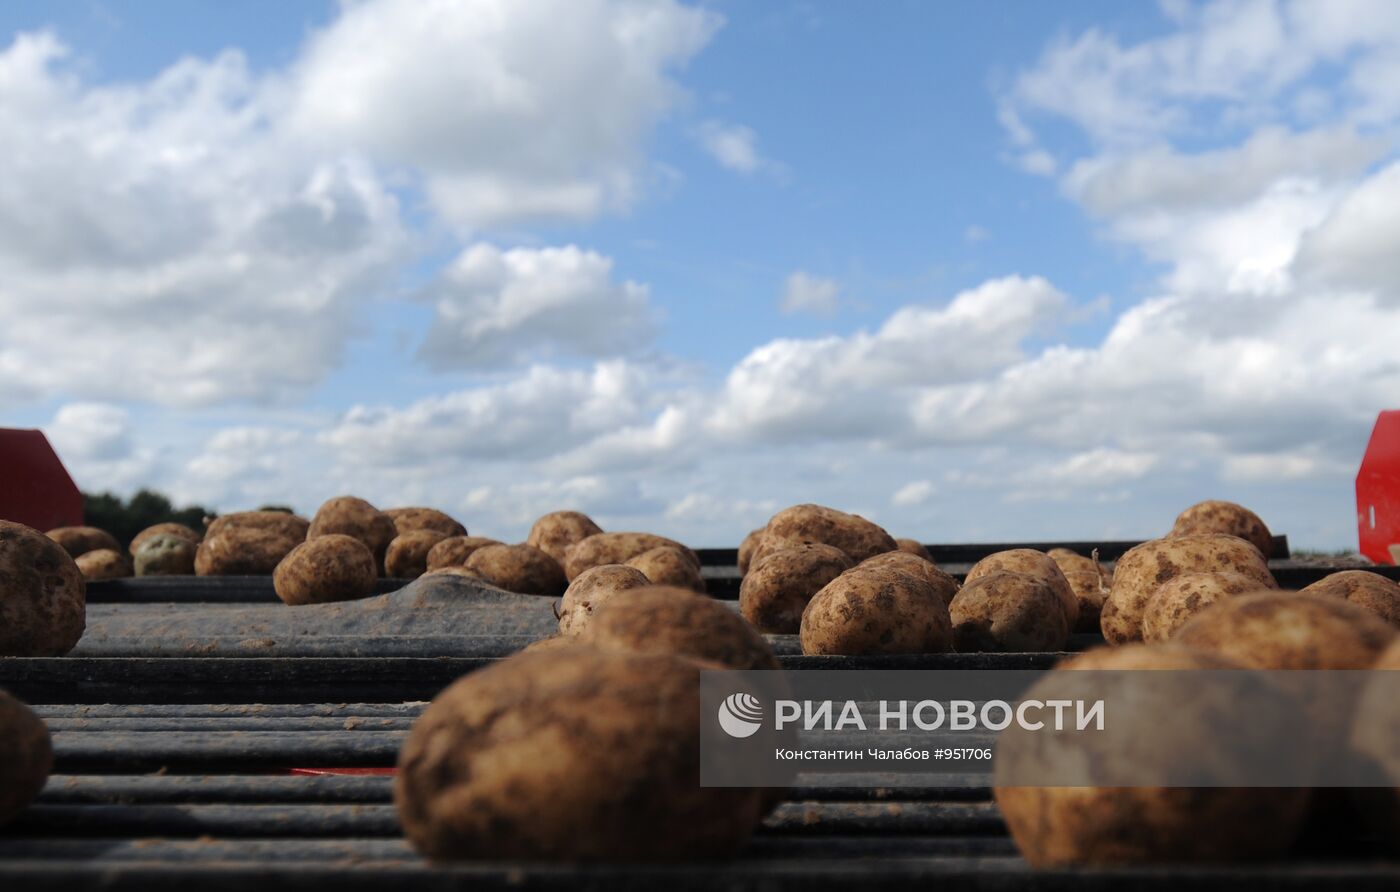 Сбор урожая картофеля в фермерском хозяйстве "Искра"